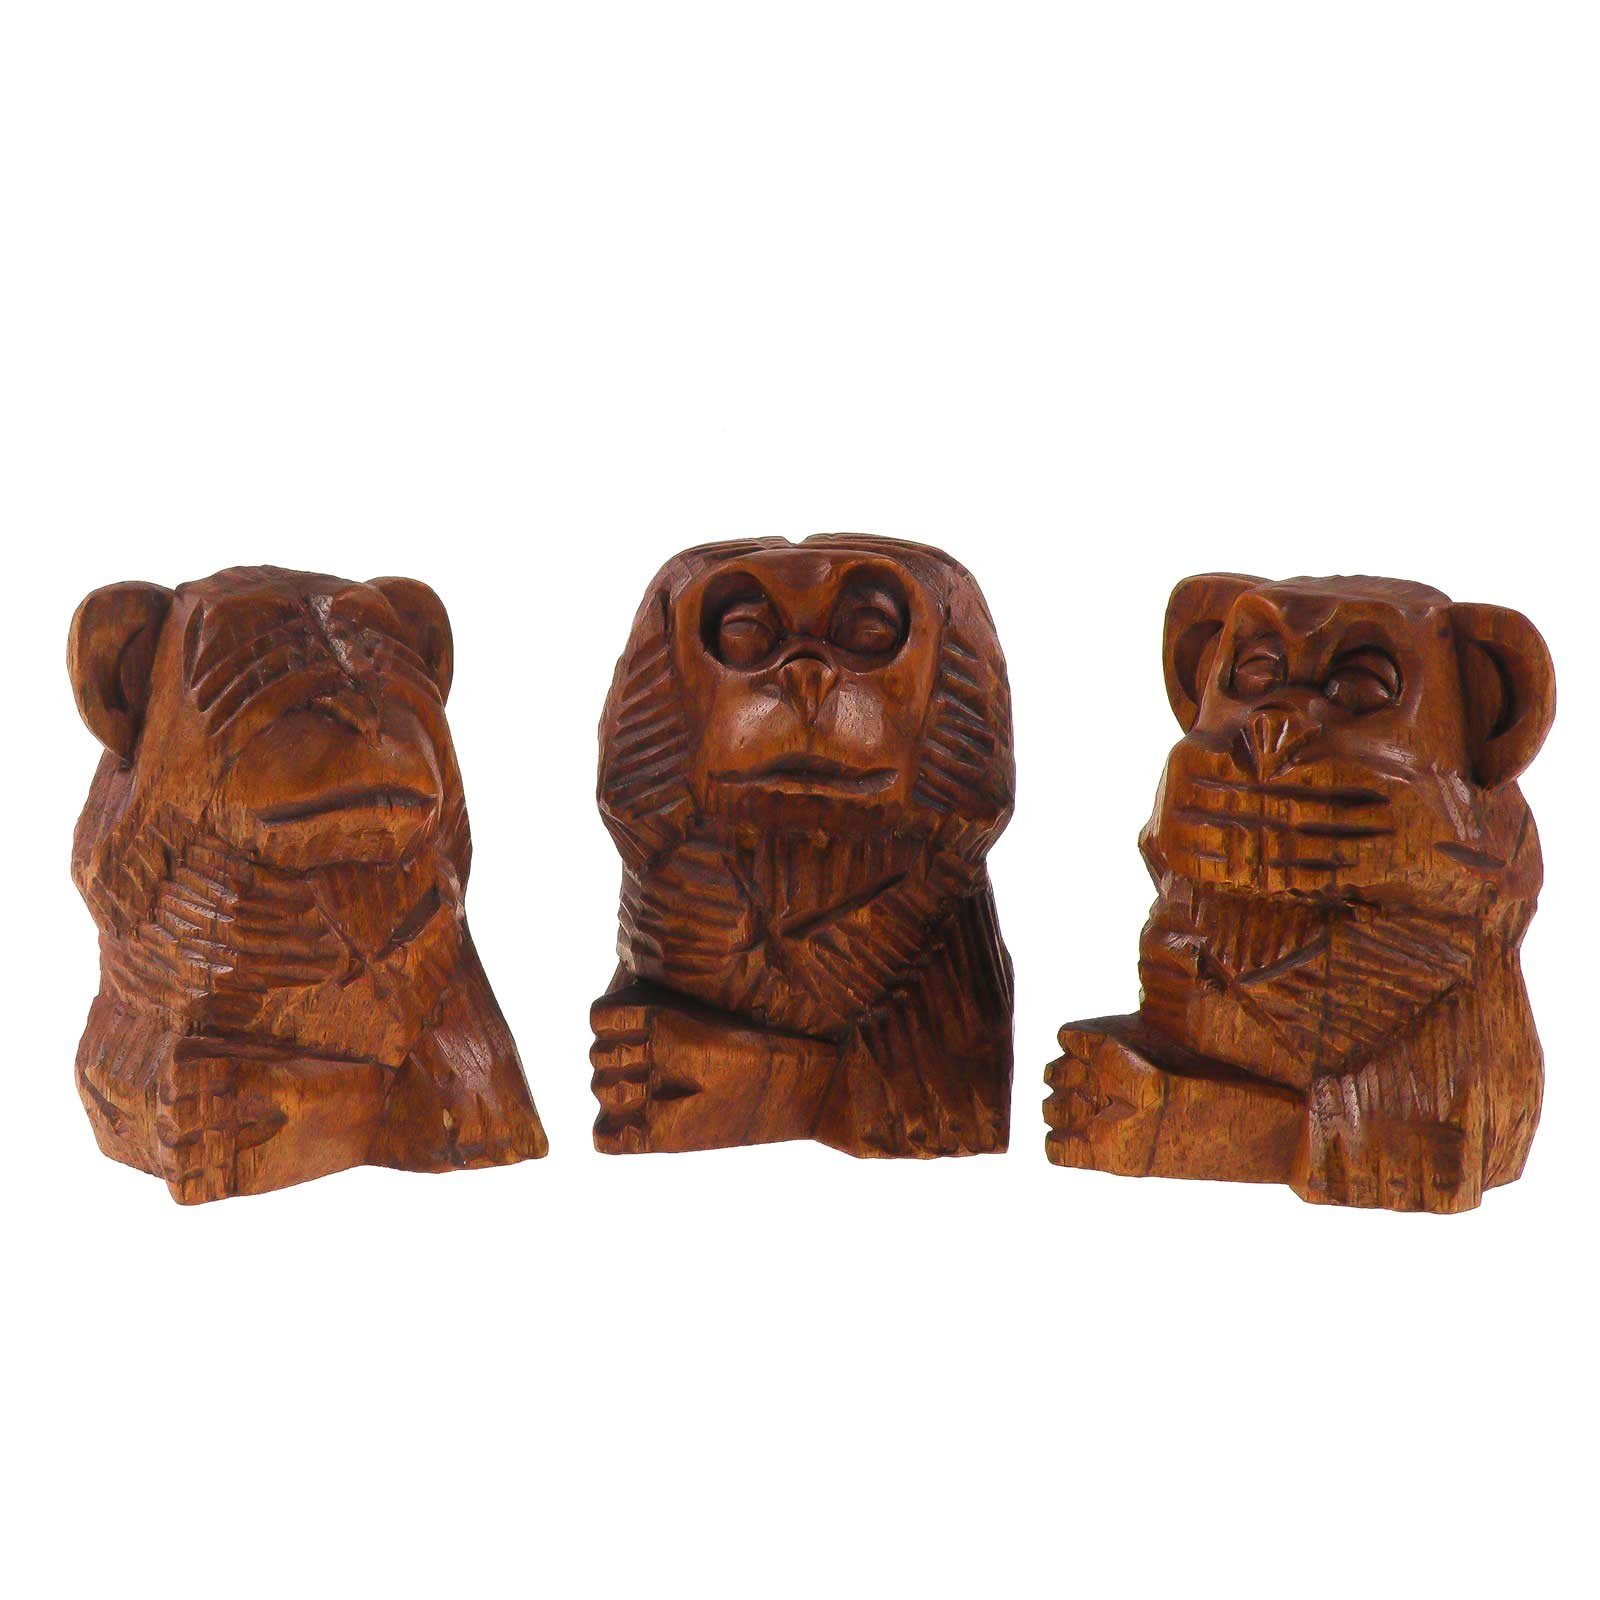 maDDma Tierfigur 3 Weise Affen, nichts hören, sehen, sagen, Soar-Holz, ca. 8 cm, 3 Affen braun